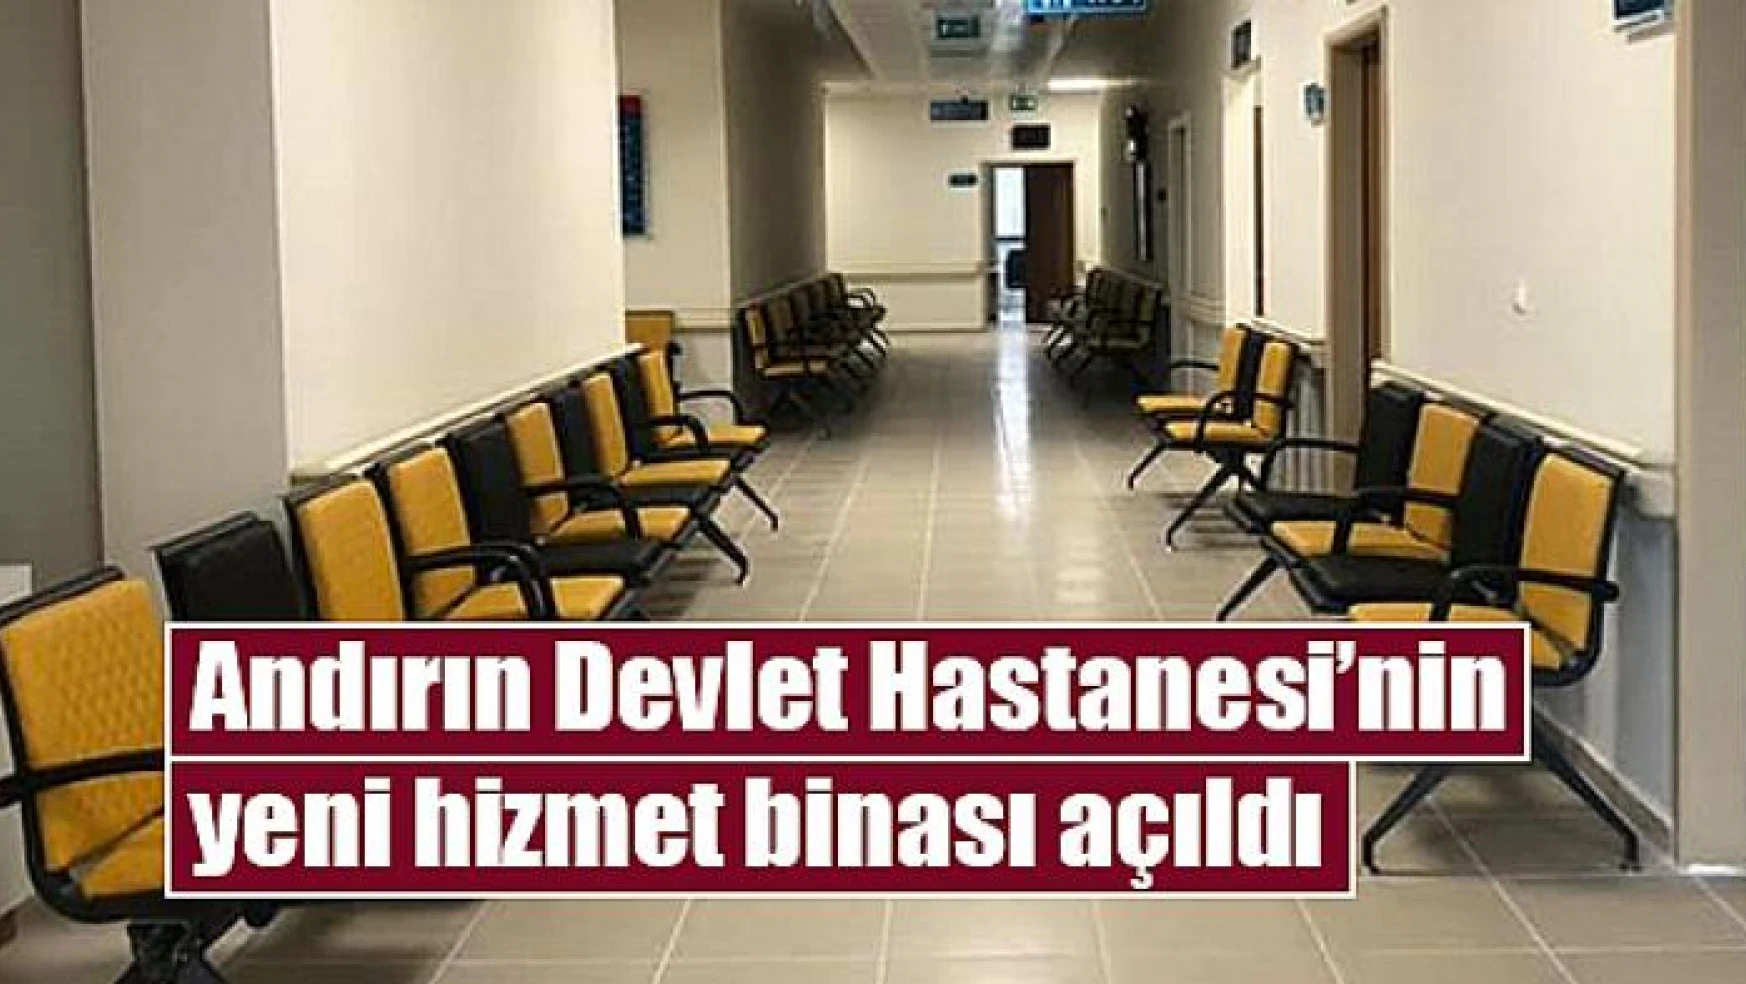 Andırın Devlet Hastanesi'nin yeni hizmet binası açıldı